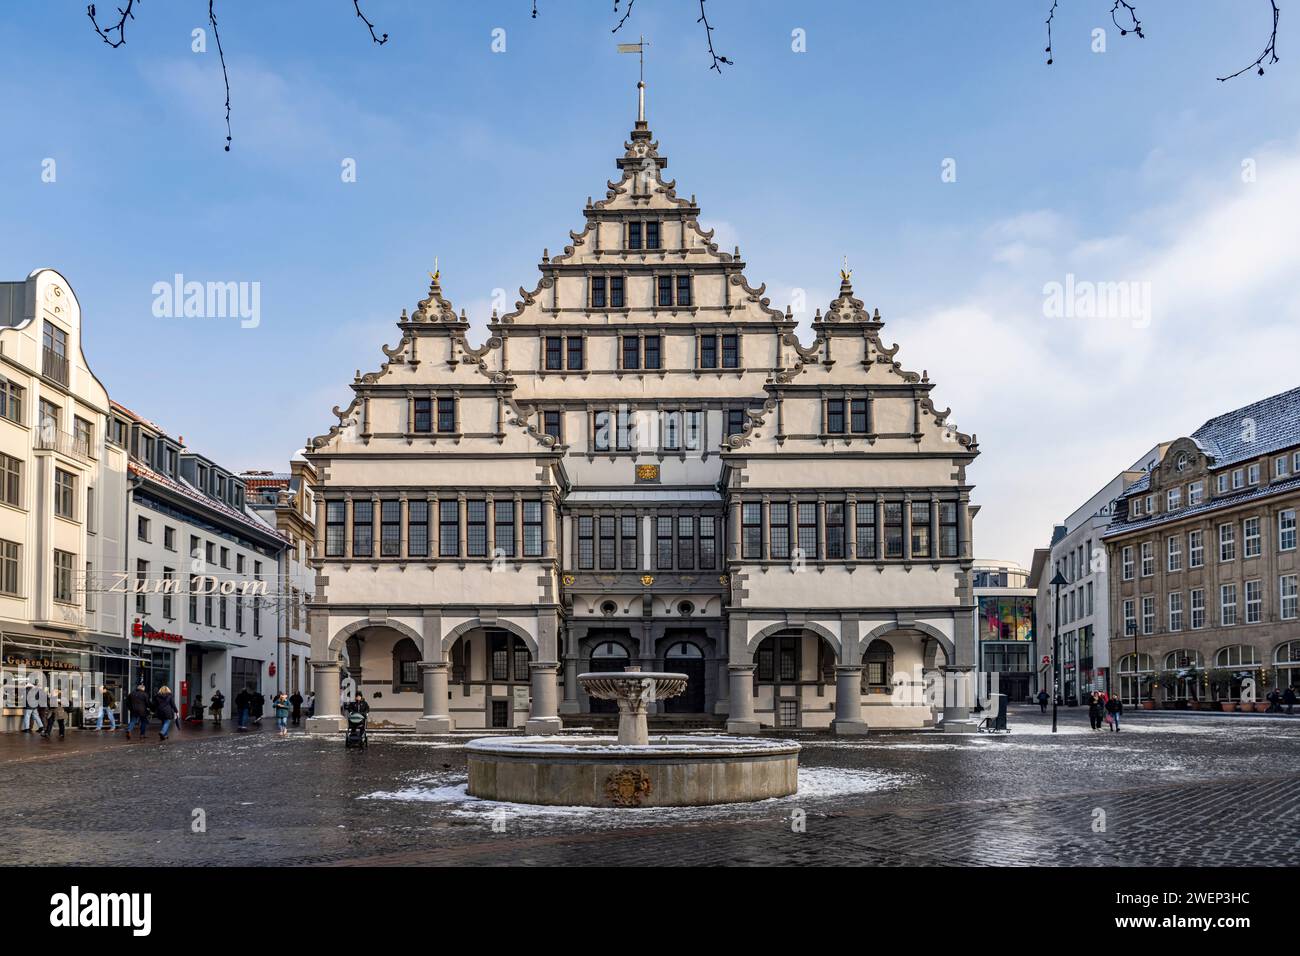 DAS Rathaus in Paderborn, Nordrhein-Westfalen, Deutschland, Europa | Hôtel de ville de Paderborn, Rhénanie du Nord-Westphalie, Allemagne, Europe Banque D'Images